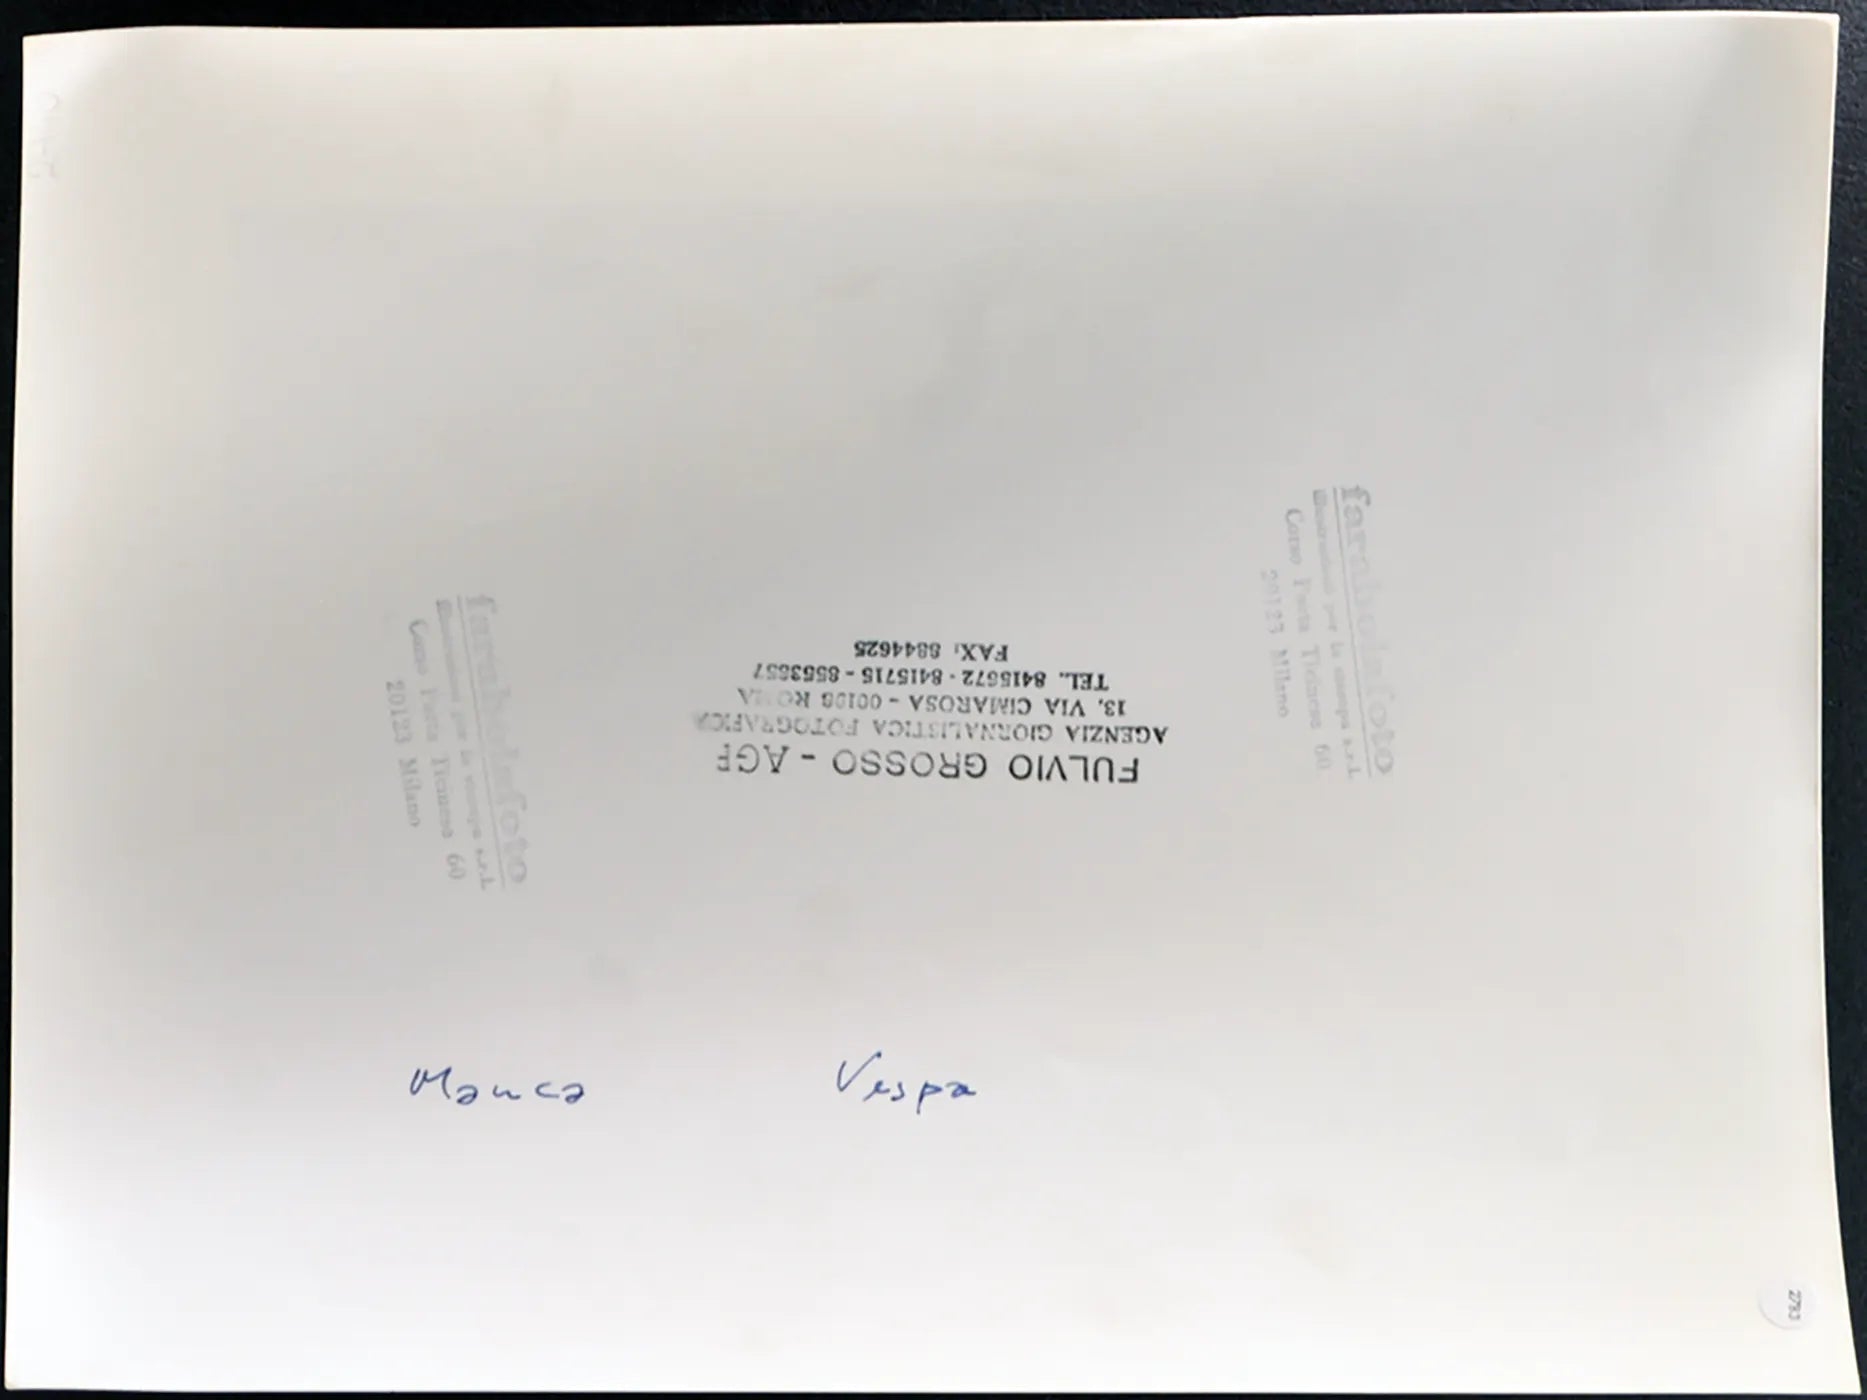 Vespa e Manca anni 90 Ft 2783 - Stampa 24x30 cm - Farabola Stampa ai sali d'argento